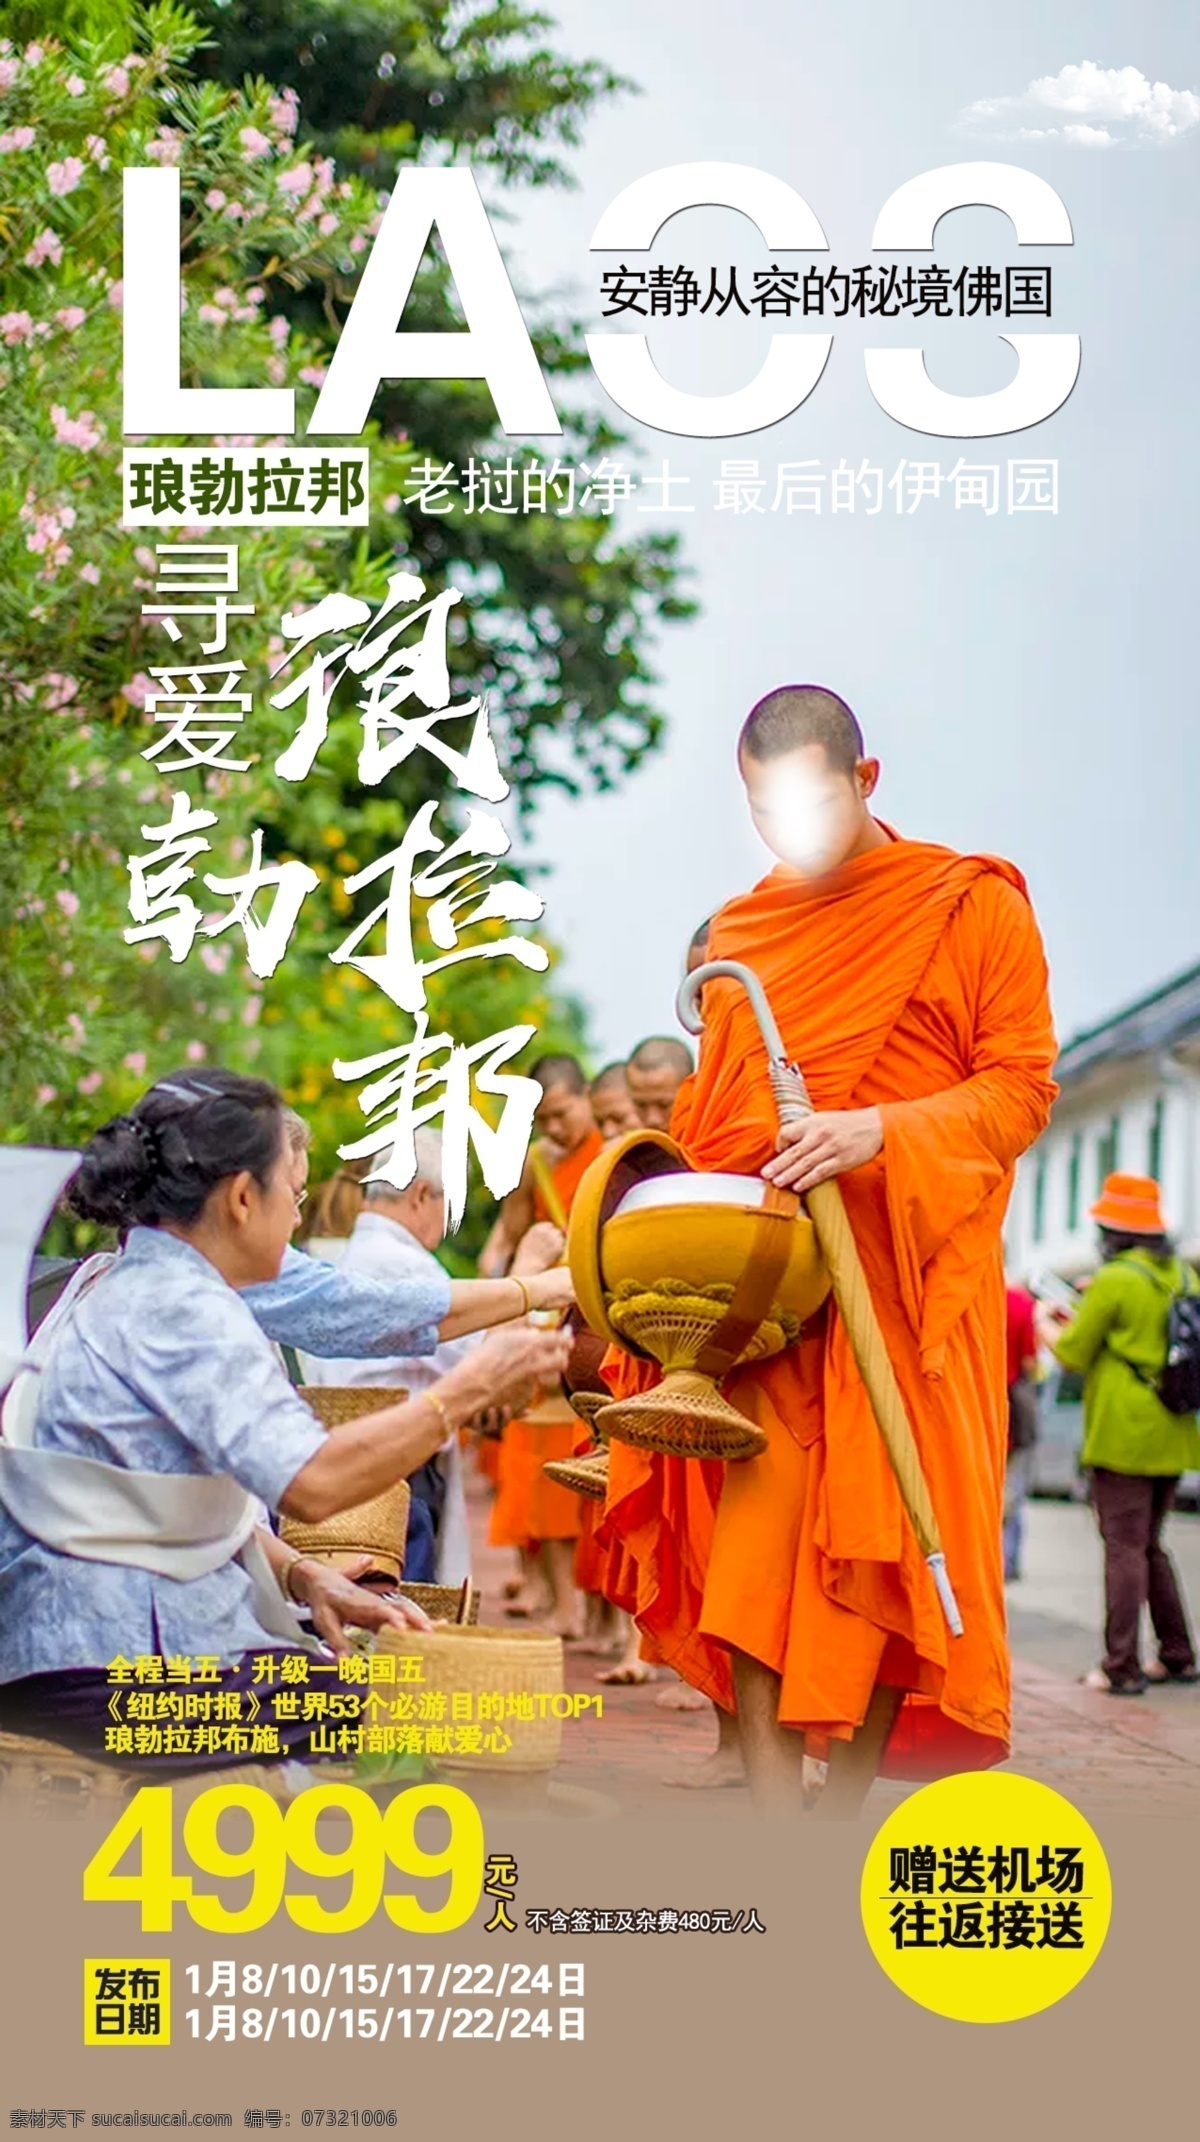 琅勃拉邦 老挝 泰国 佛国 全境 秘境 旅游 海报 行走